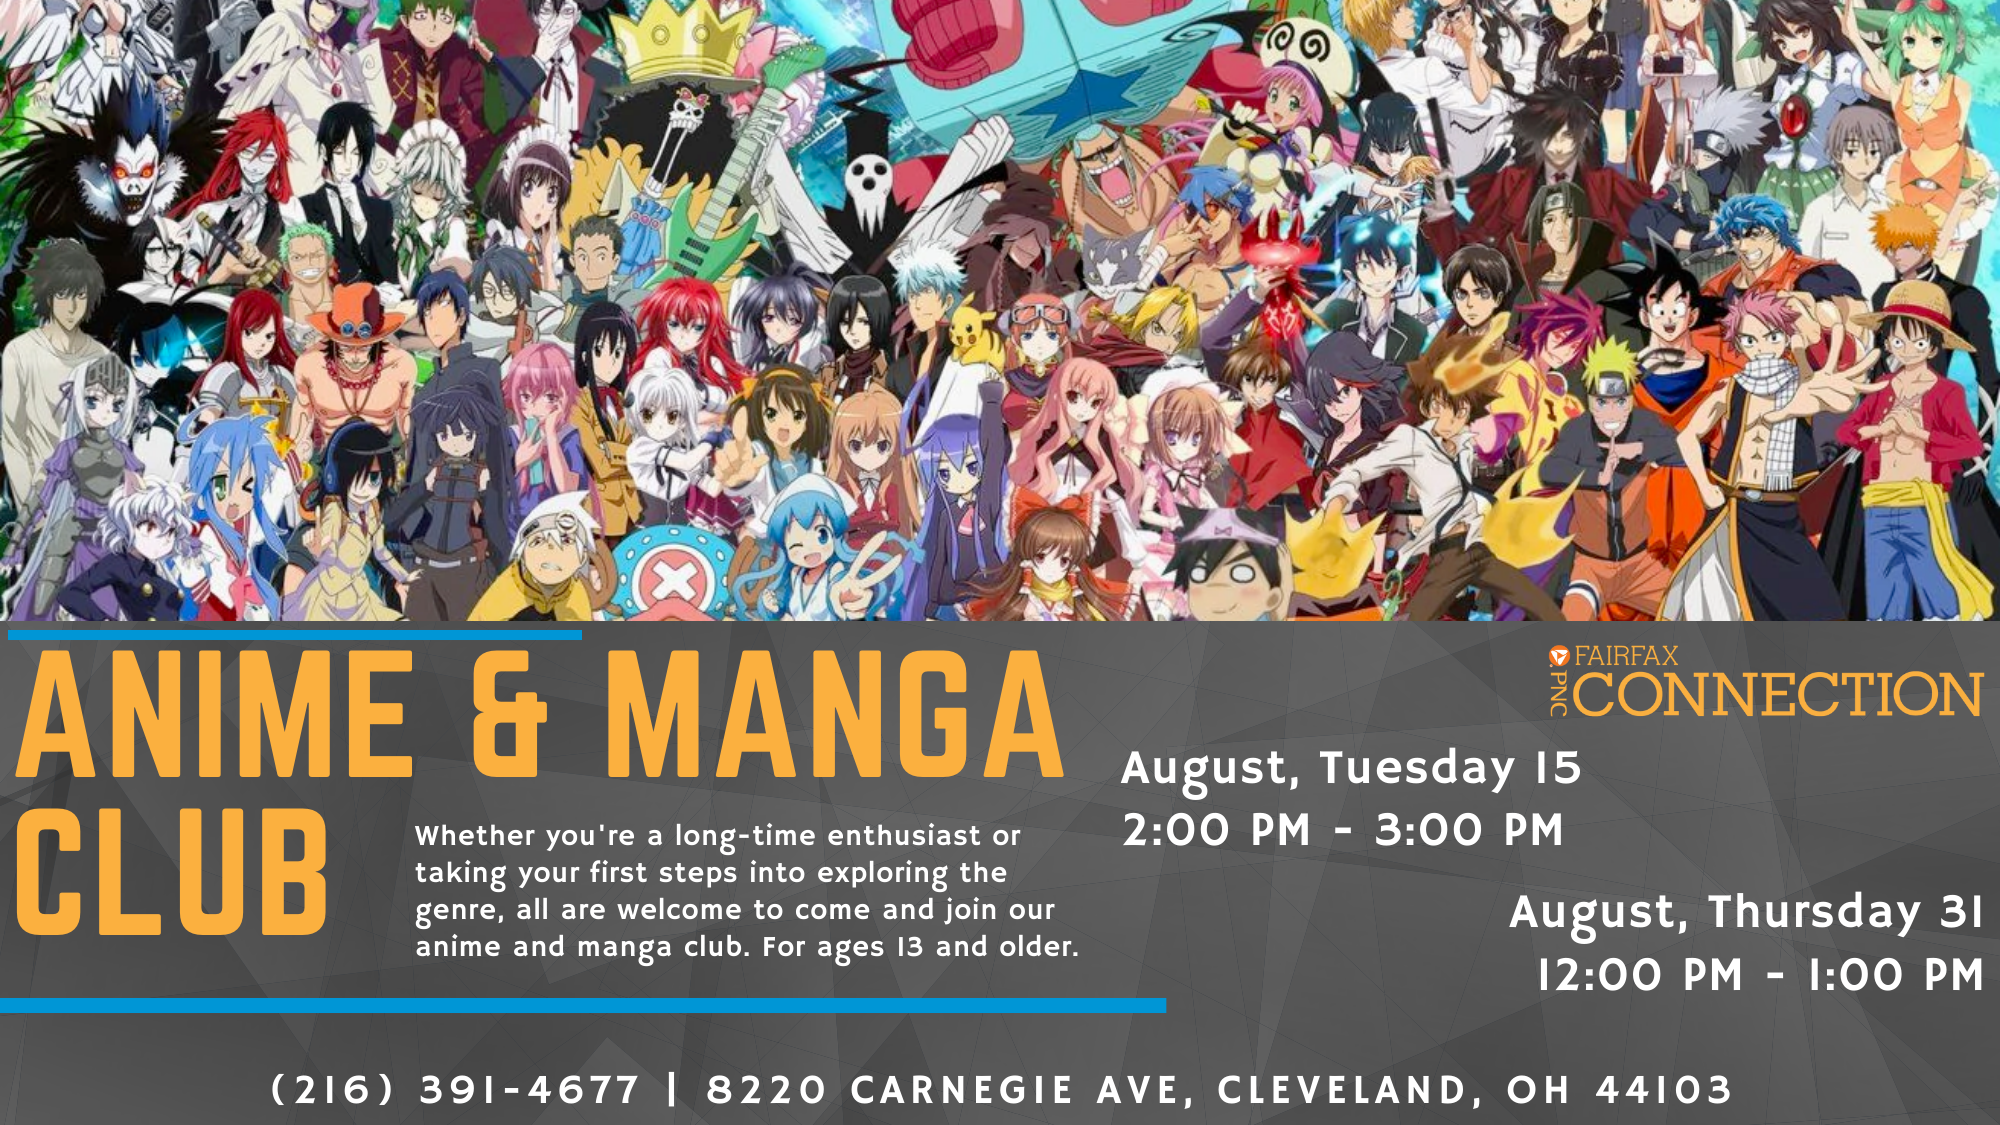 Anime & Manga Club - PNC Fairfax Connection